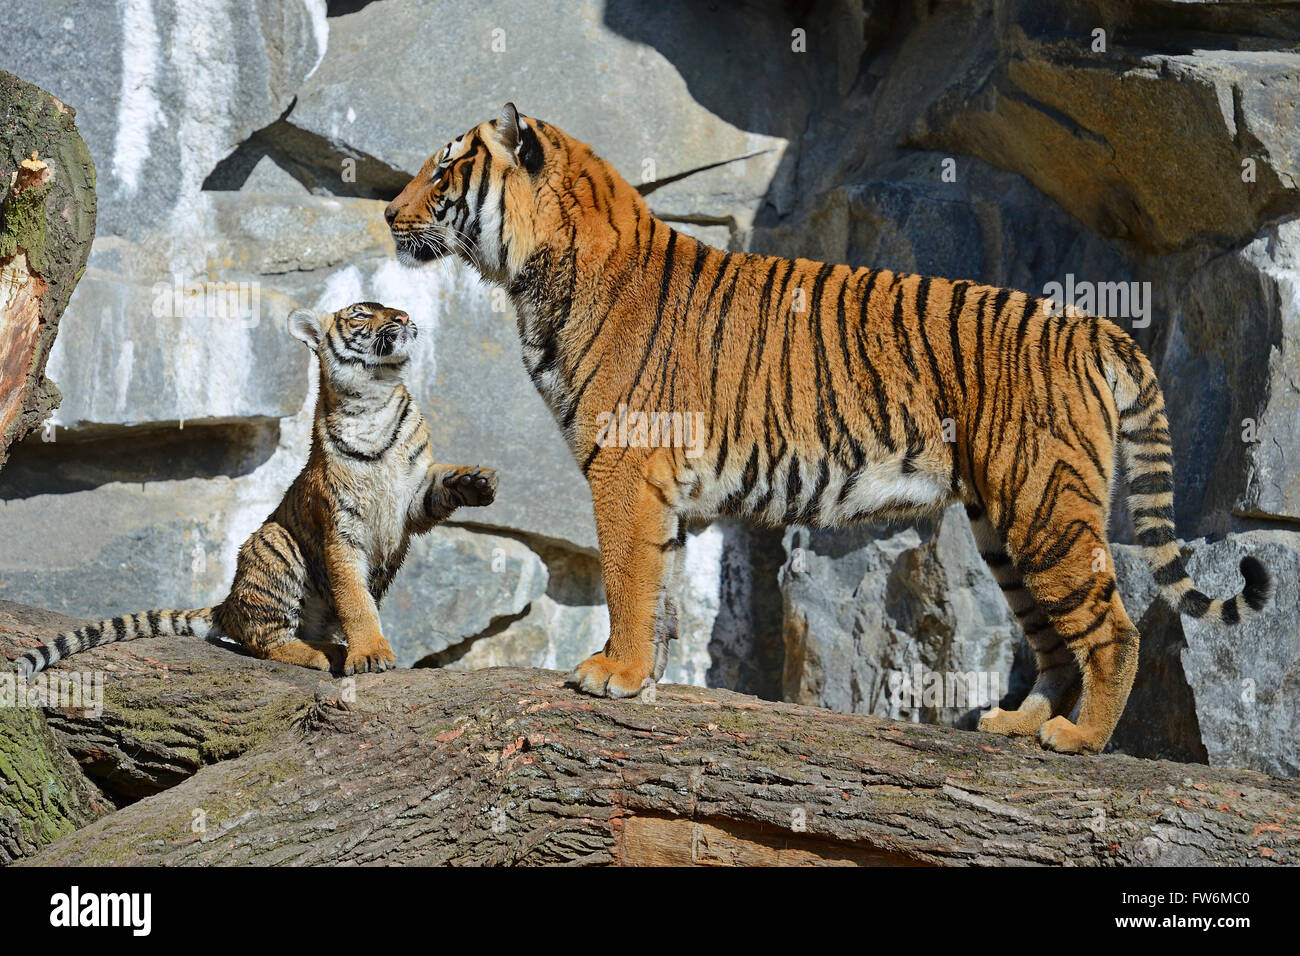 Hinterindischer Tiger (Panthera tigris corbetti) Weibchen mit Jungtier, Tierpark Berlin, Deutschland, Europa Stock Photo